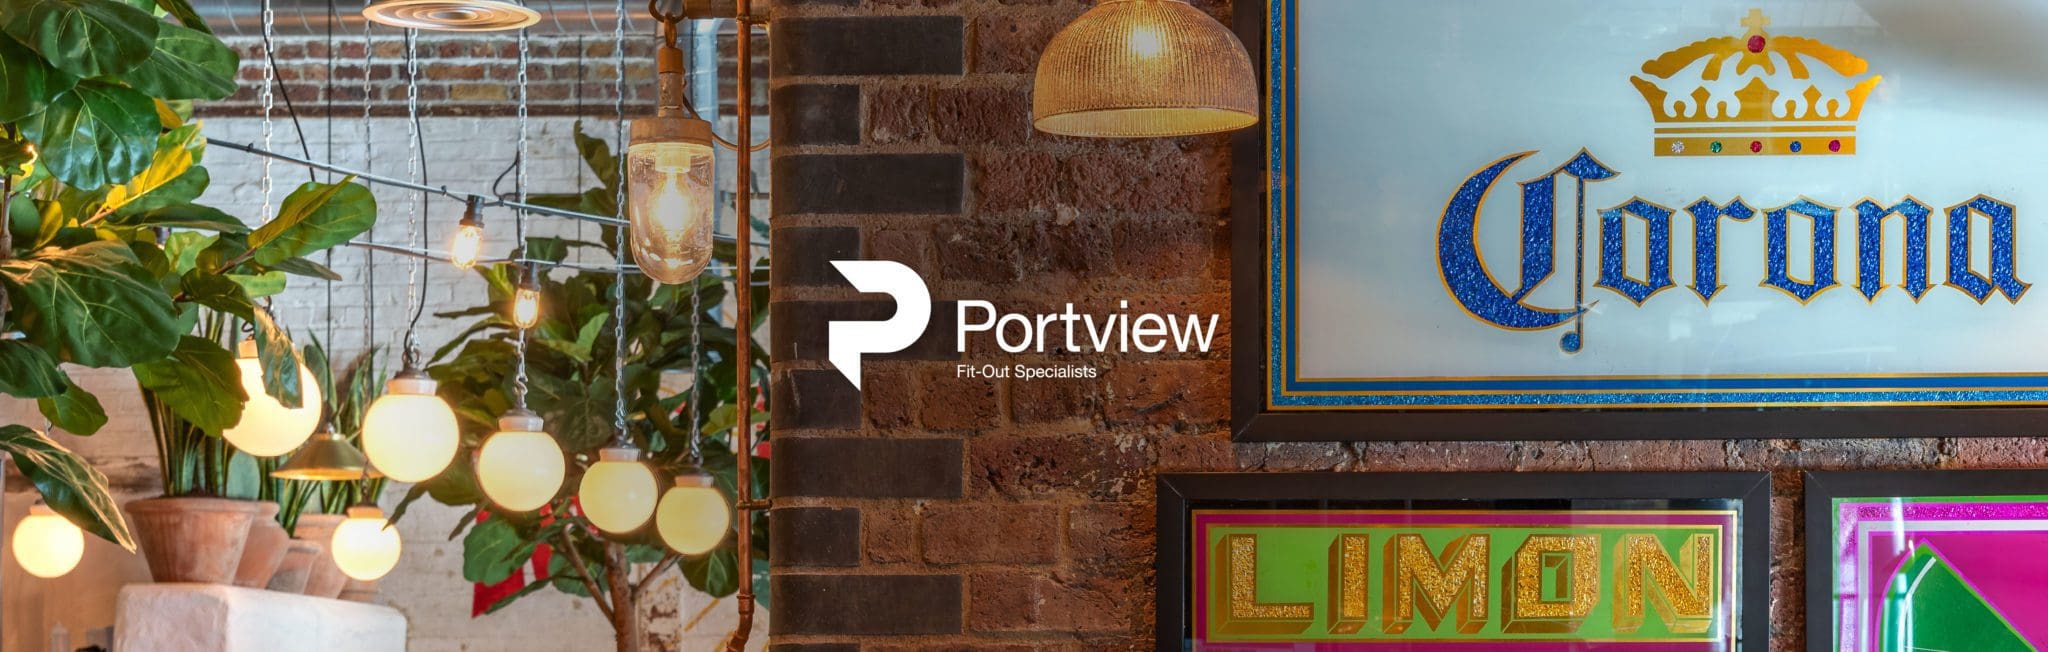 portview-banner